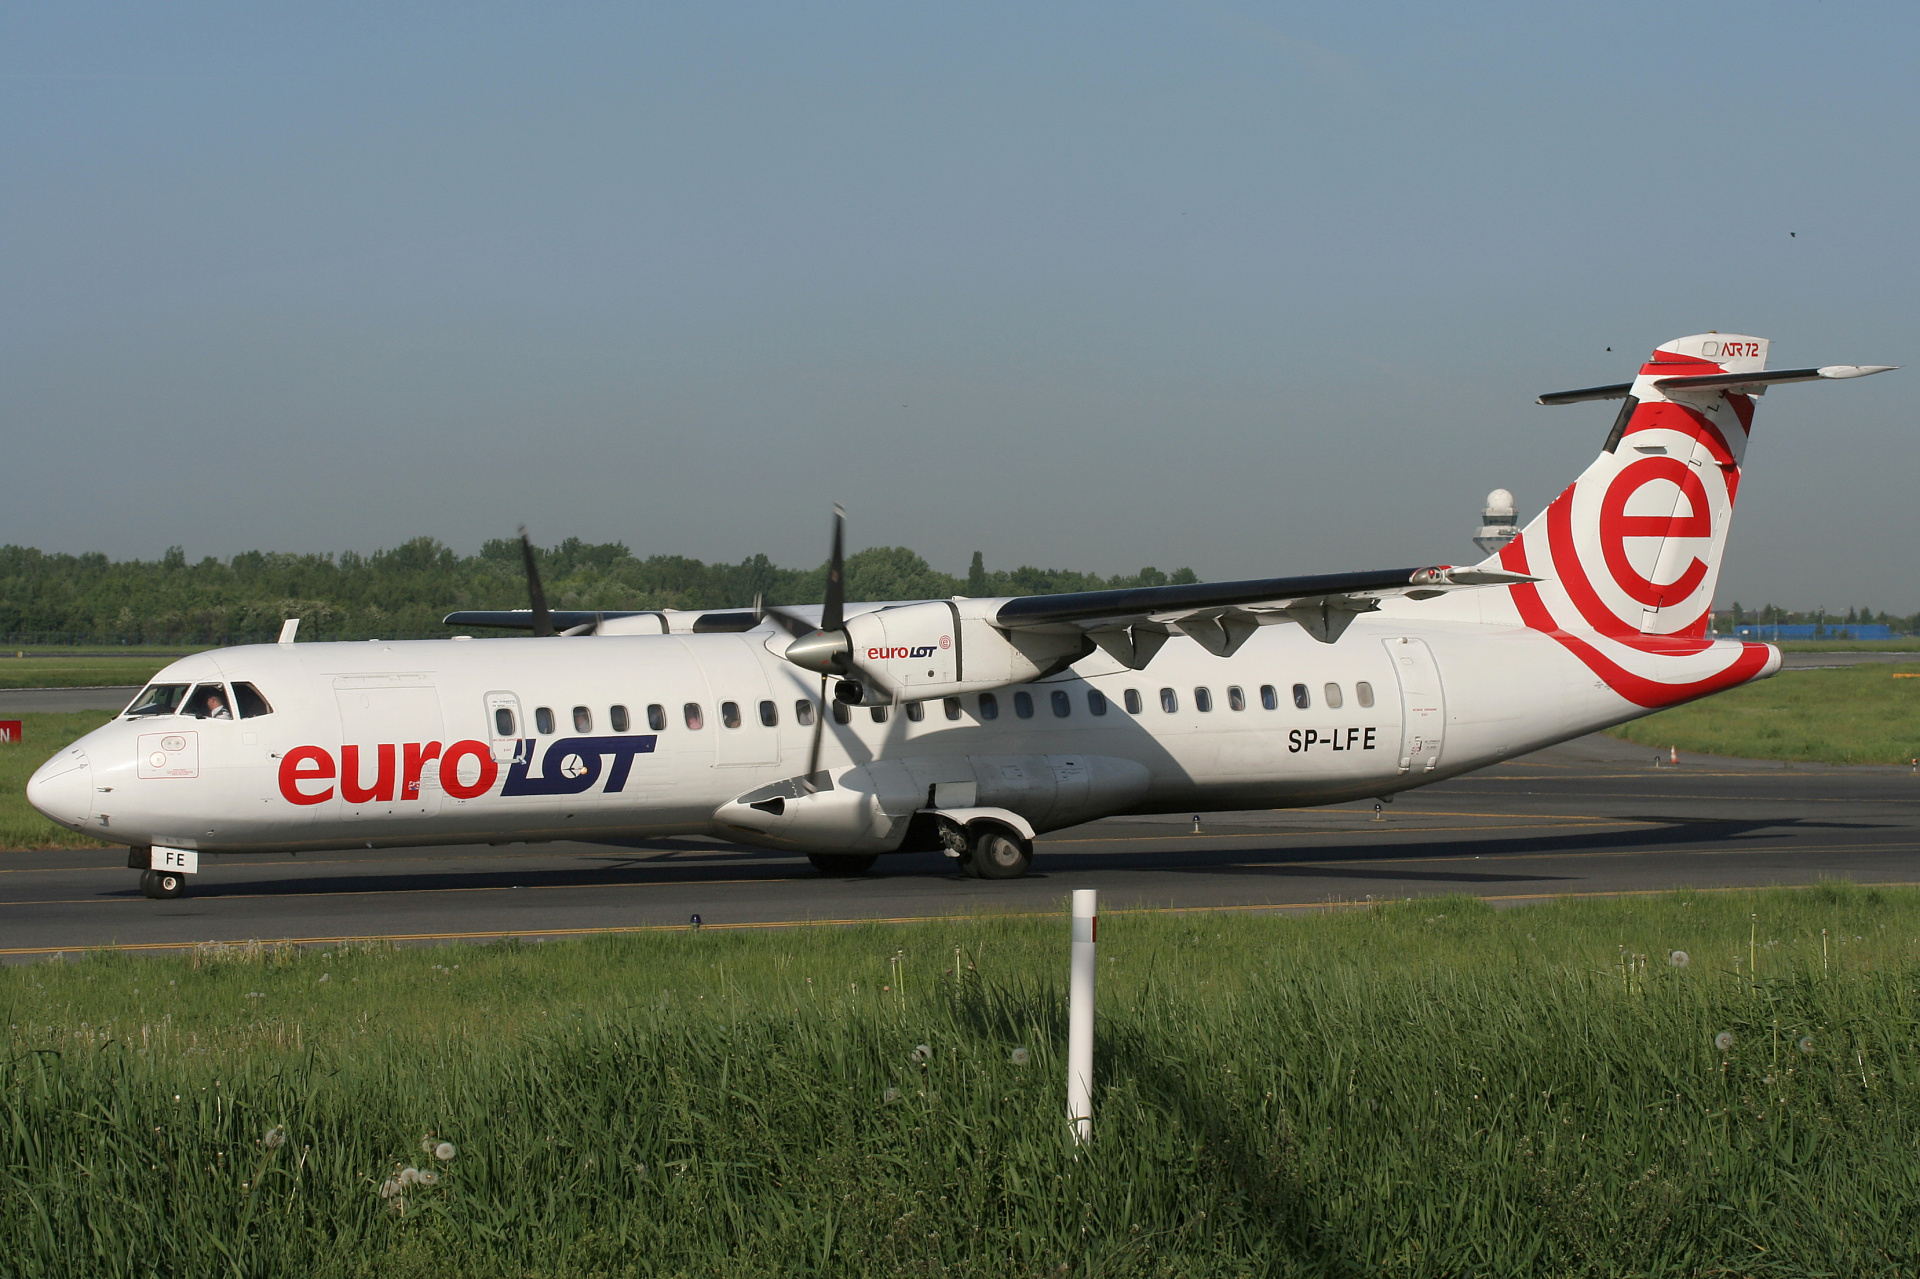 SP-LFE (Aircraft » EPWA Spotting » ATR 72 » EuroLOT)